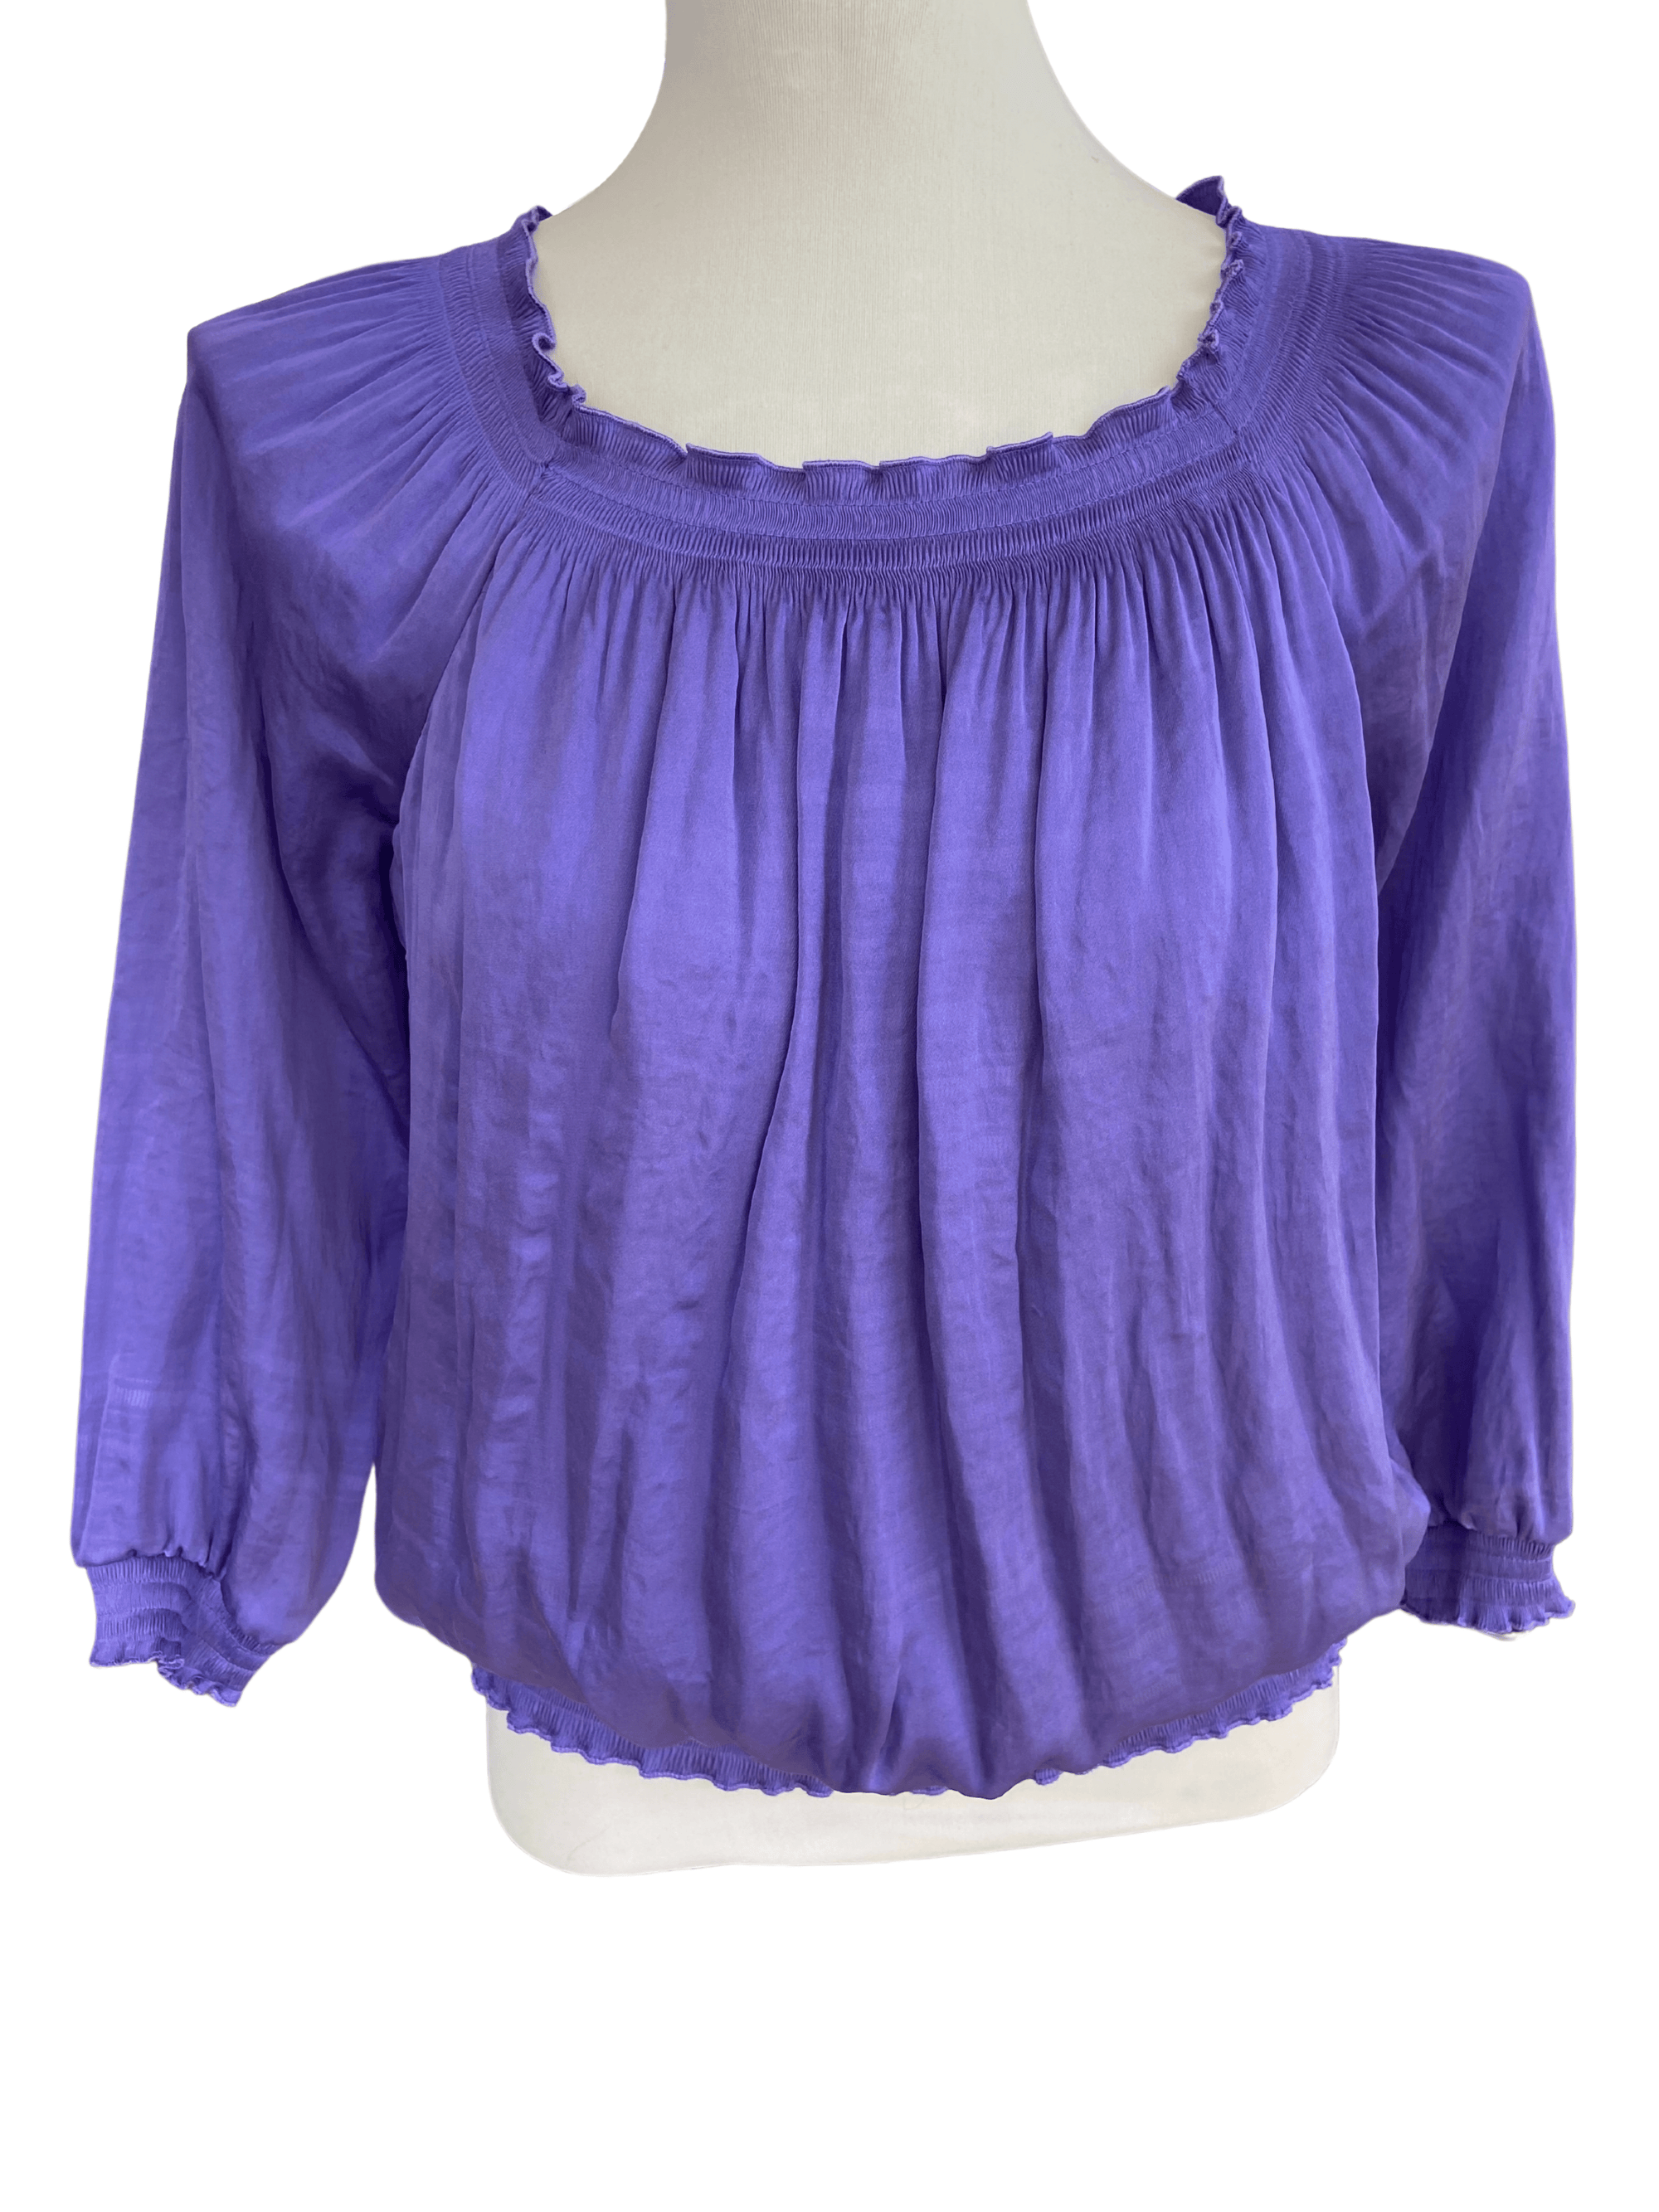 Cool Summer ALFANI purple pleated top